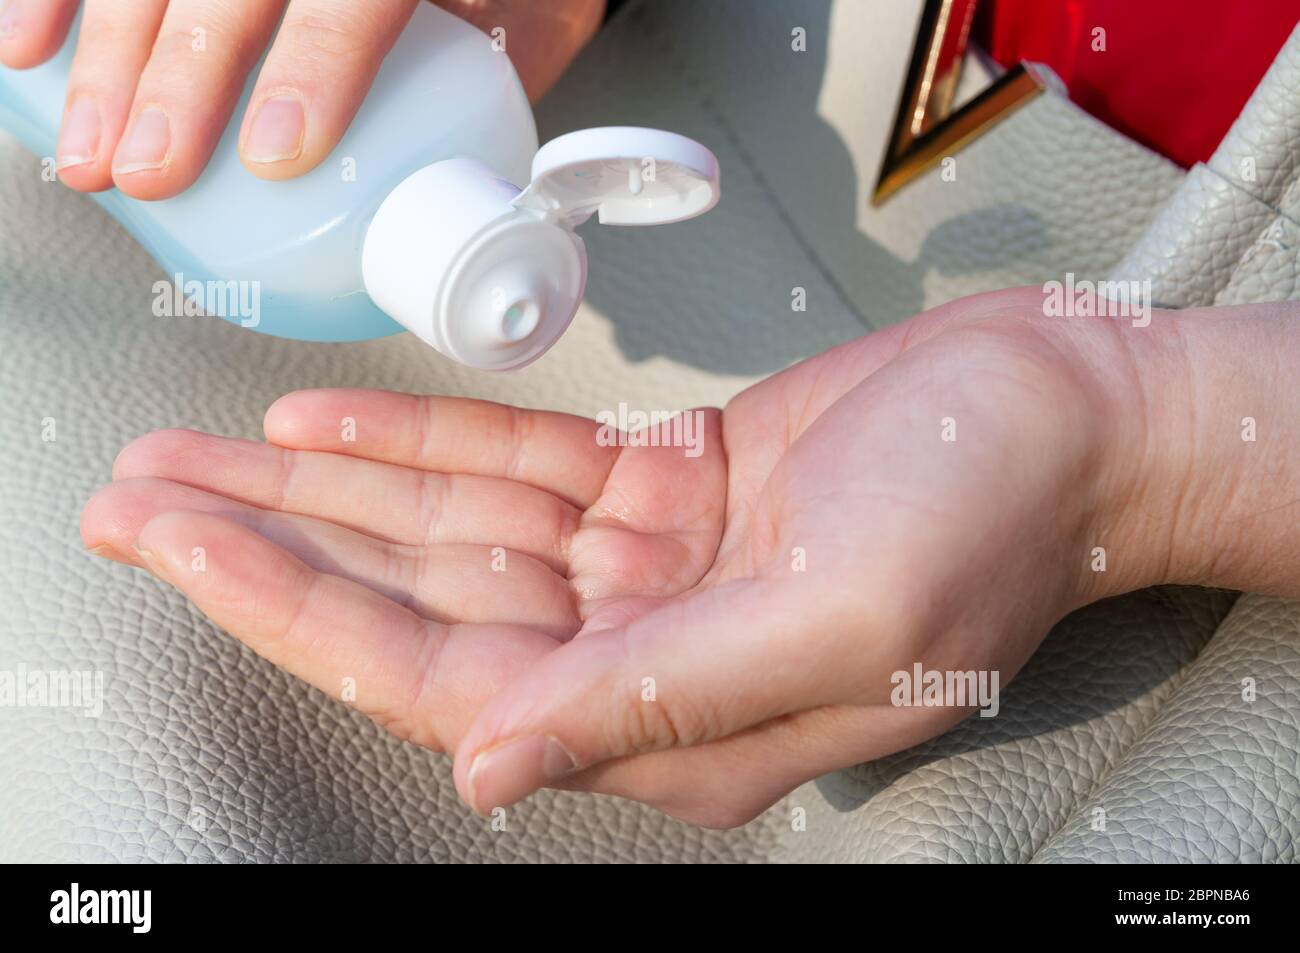 Le mani delle donne con il lavaggio a mano di gel igienizzante. Foto Stock